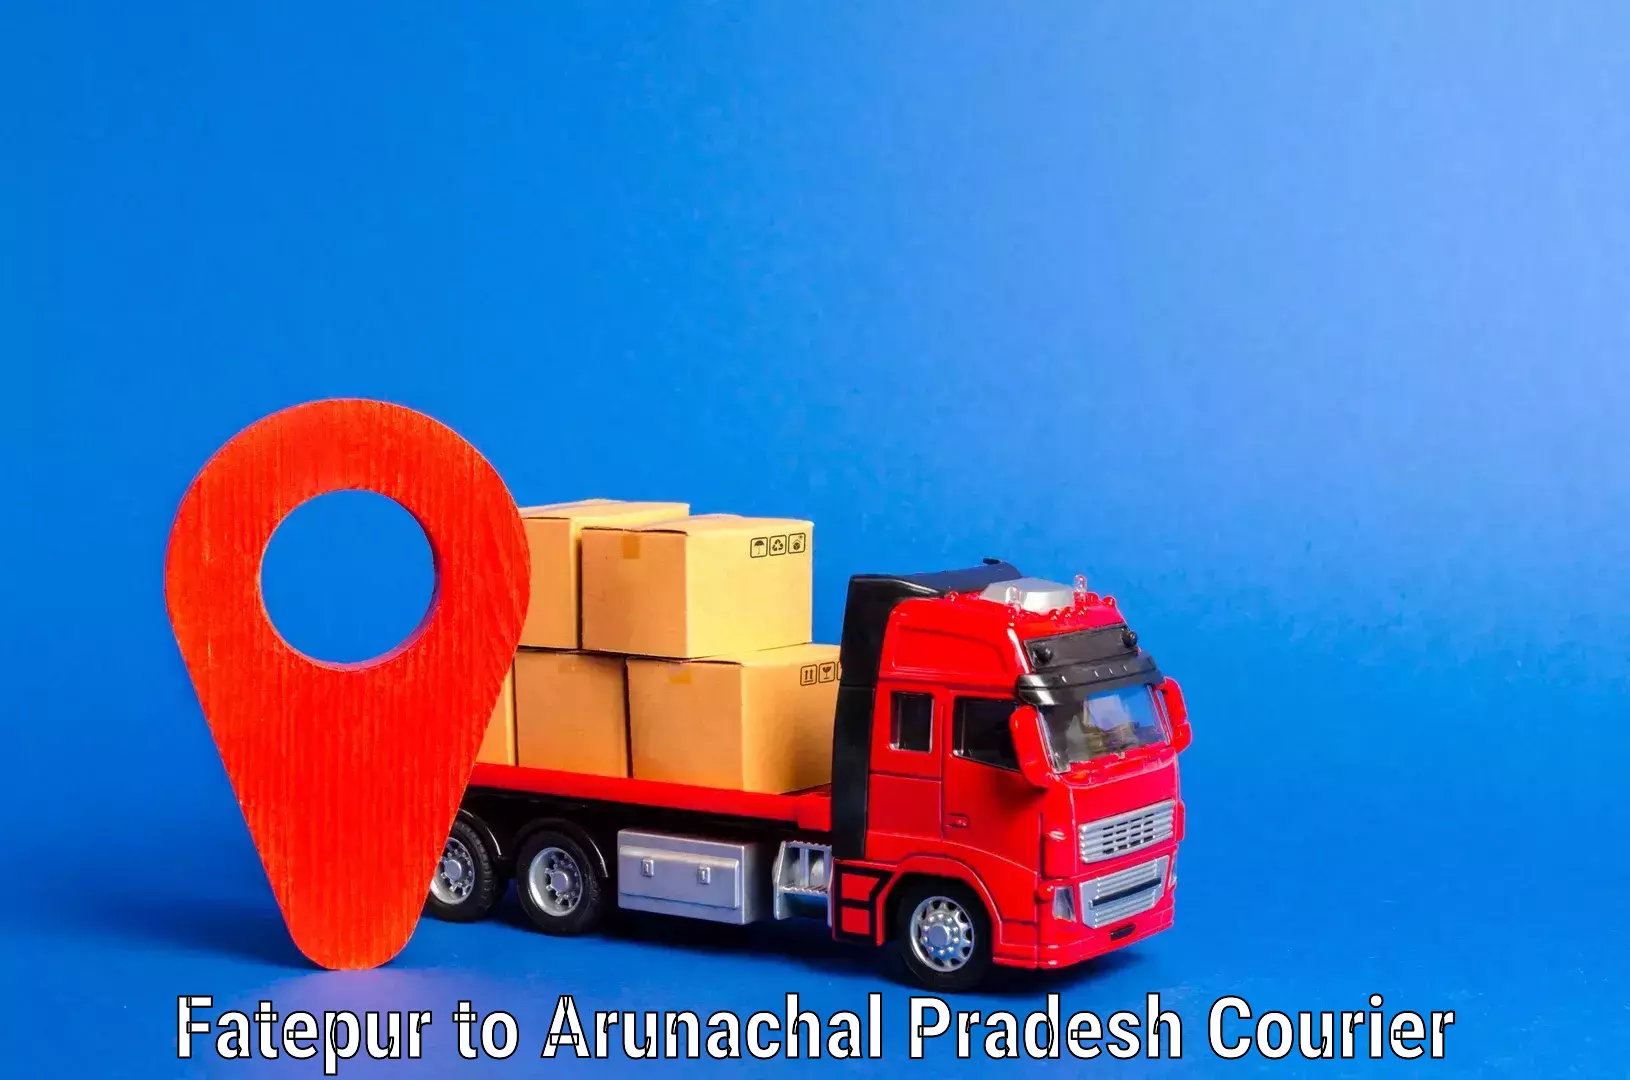 Furniture transport services in Fatepur to Arunachal Pradesh